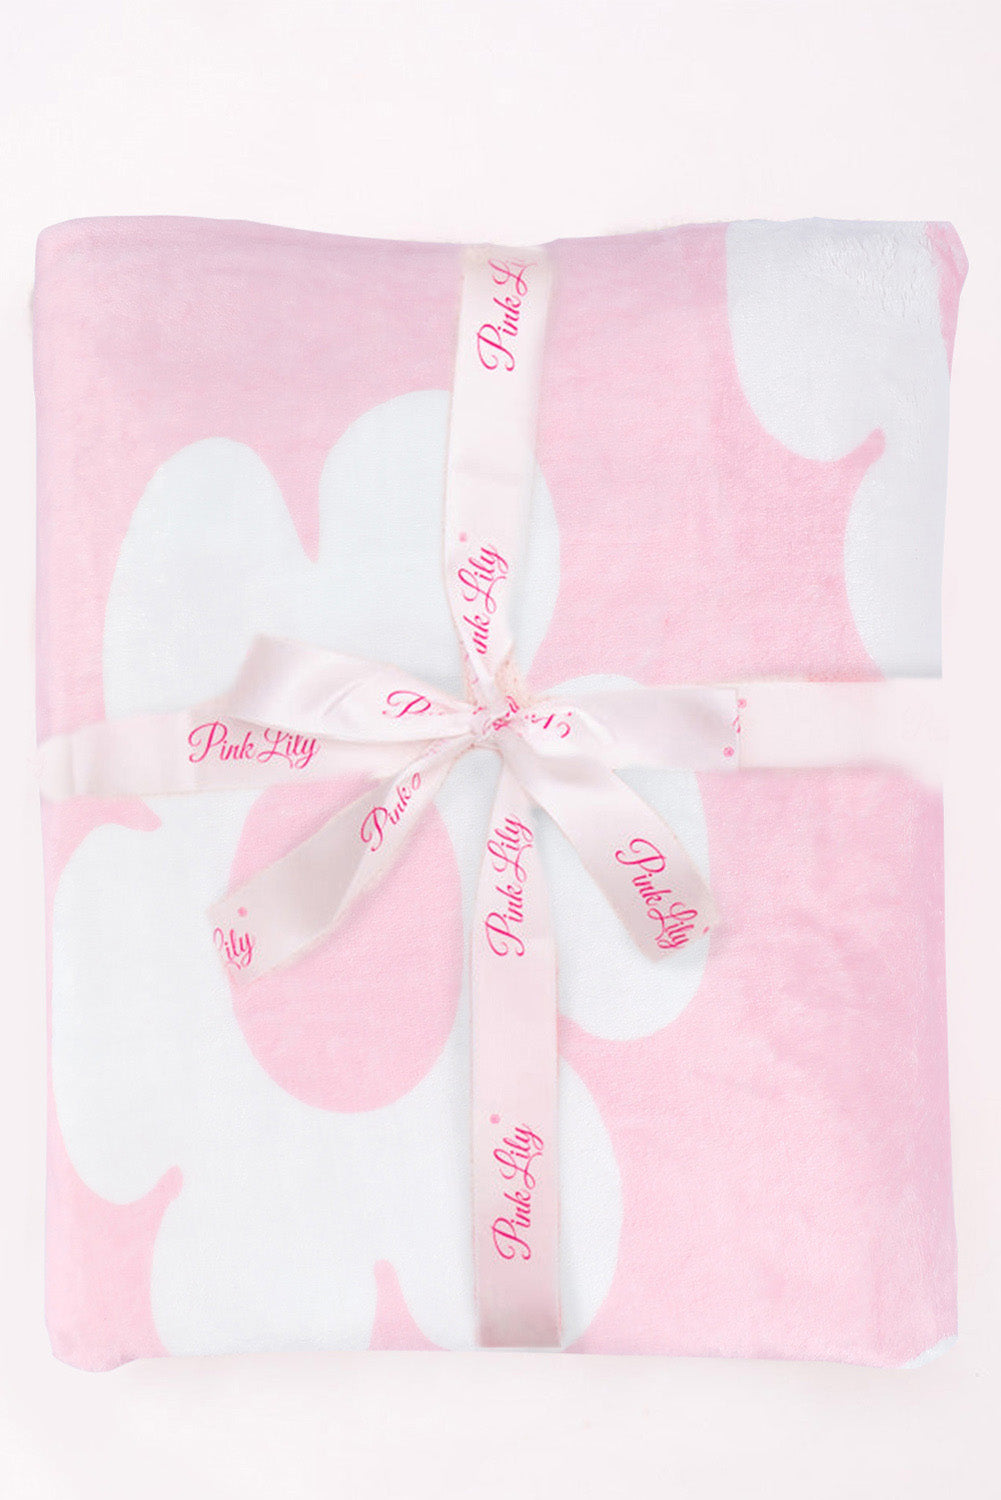 Pink Floral Pattern Square Blanket 76*63cm